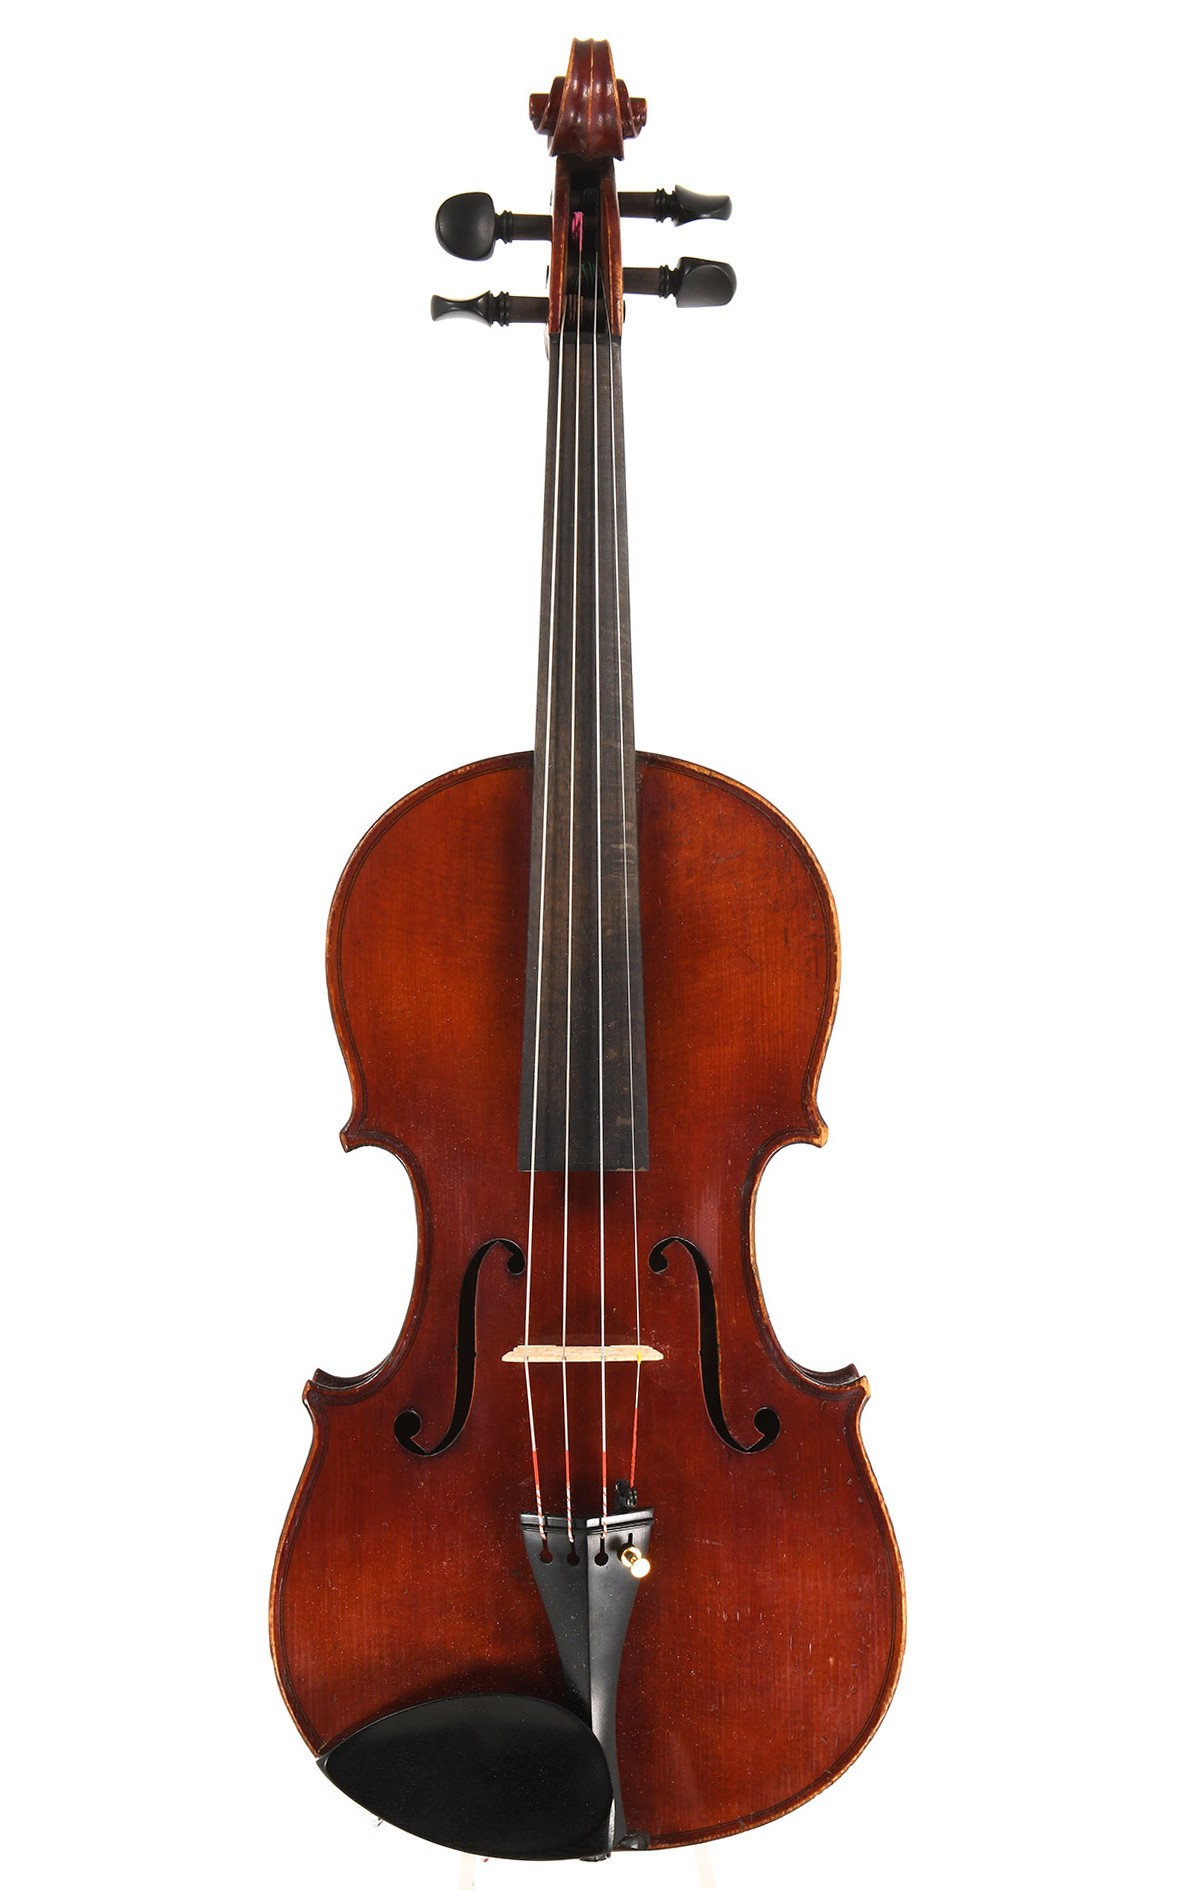 Mittenwald violin by Neuner & Hornsteiner, c.1900